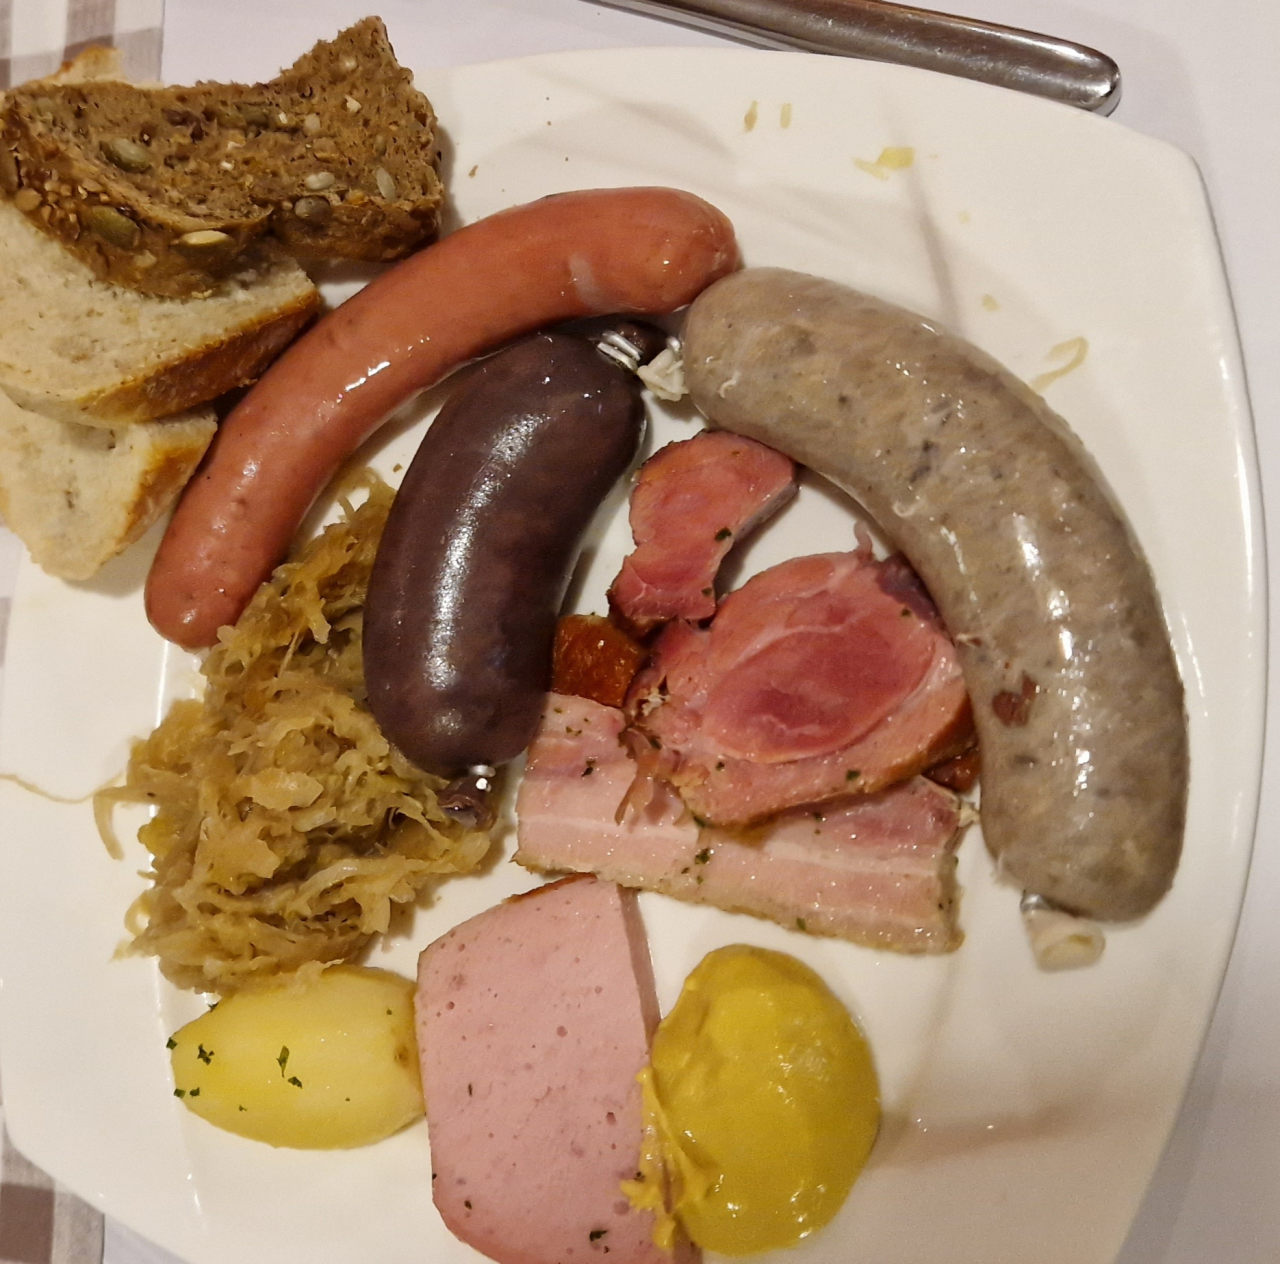 Sauerkraut, Blut- & Leberwurst, Speck & Fleischäse - echt traditionell